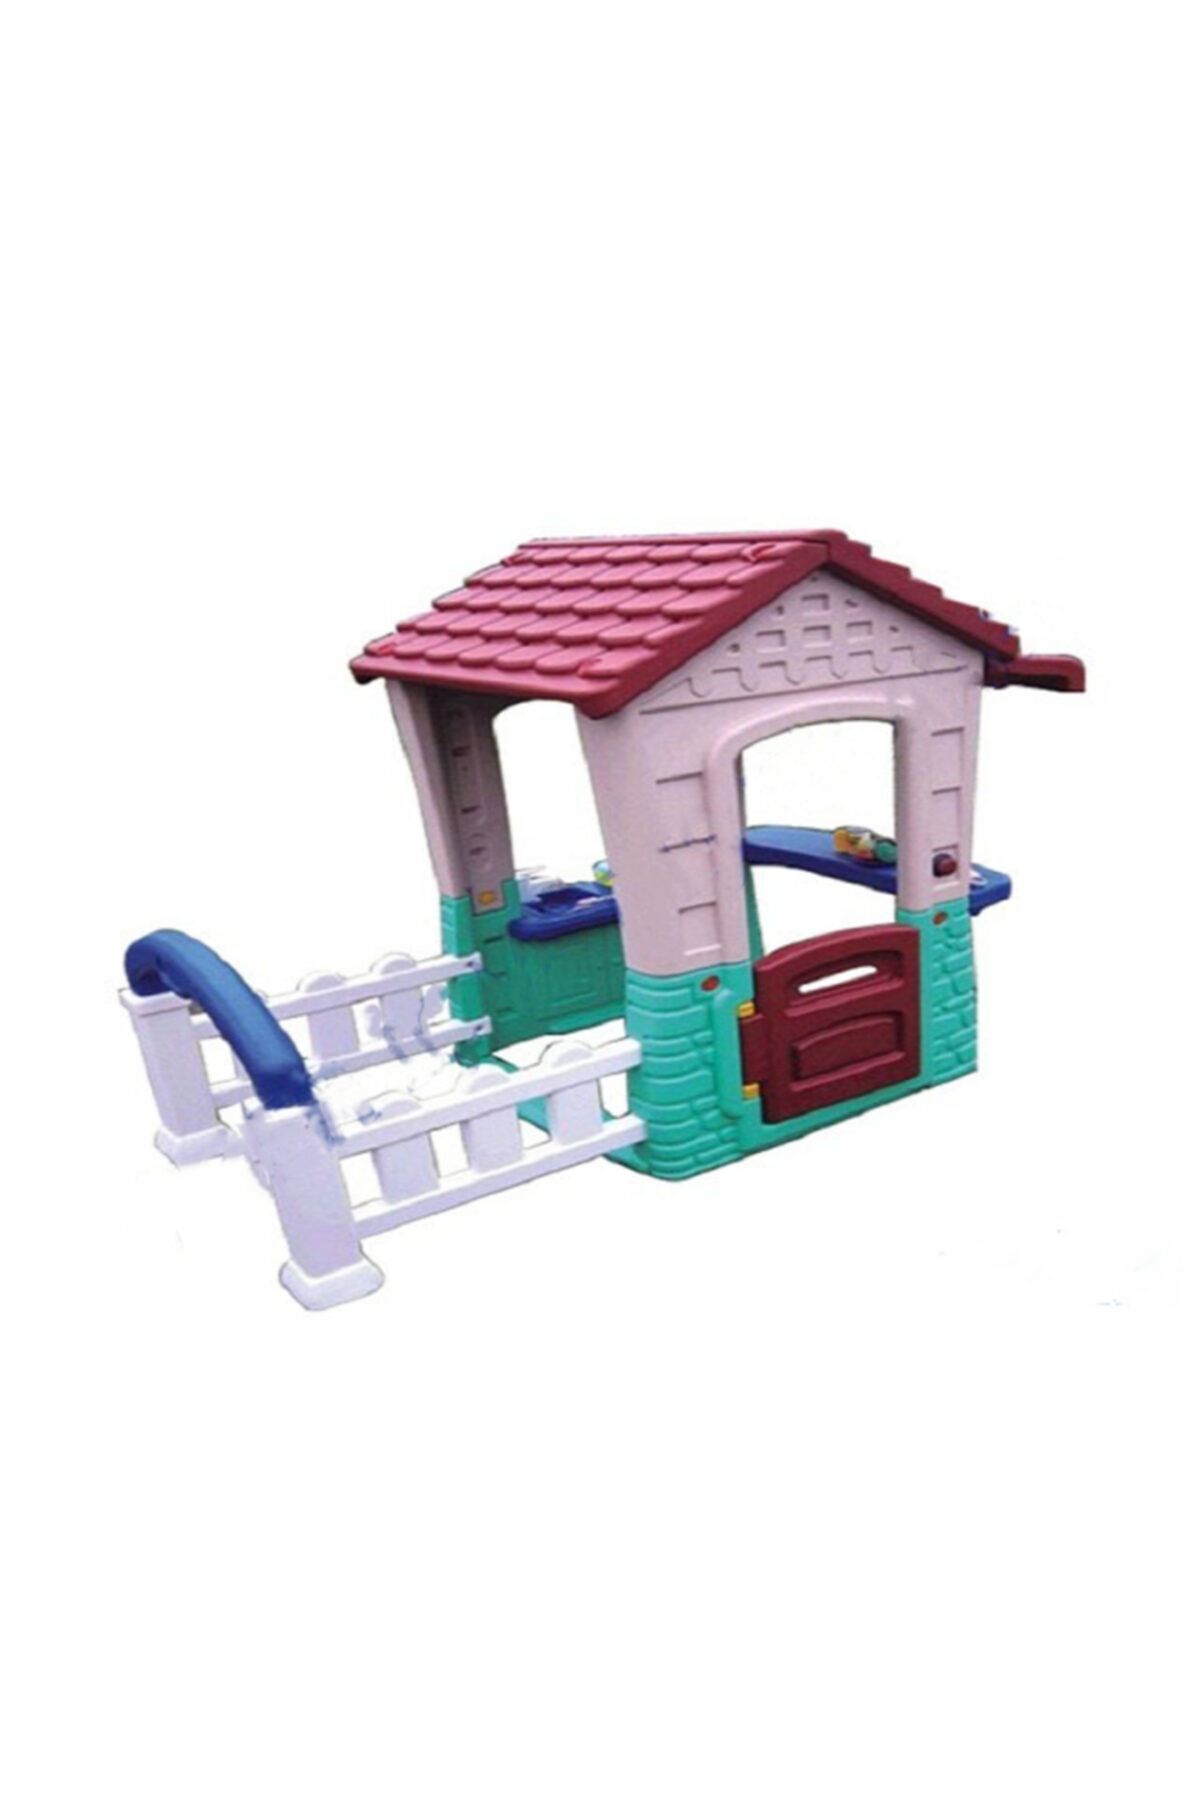 OSERSHOP Şirin Bahçeli Evim Oyun Evi Plastik Çocuk Oyun Evi En Güzel Oyun Evi Modelleri Ve Fiyatları